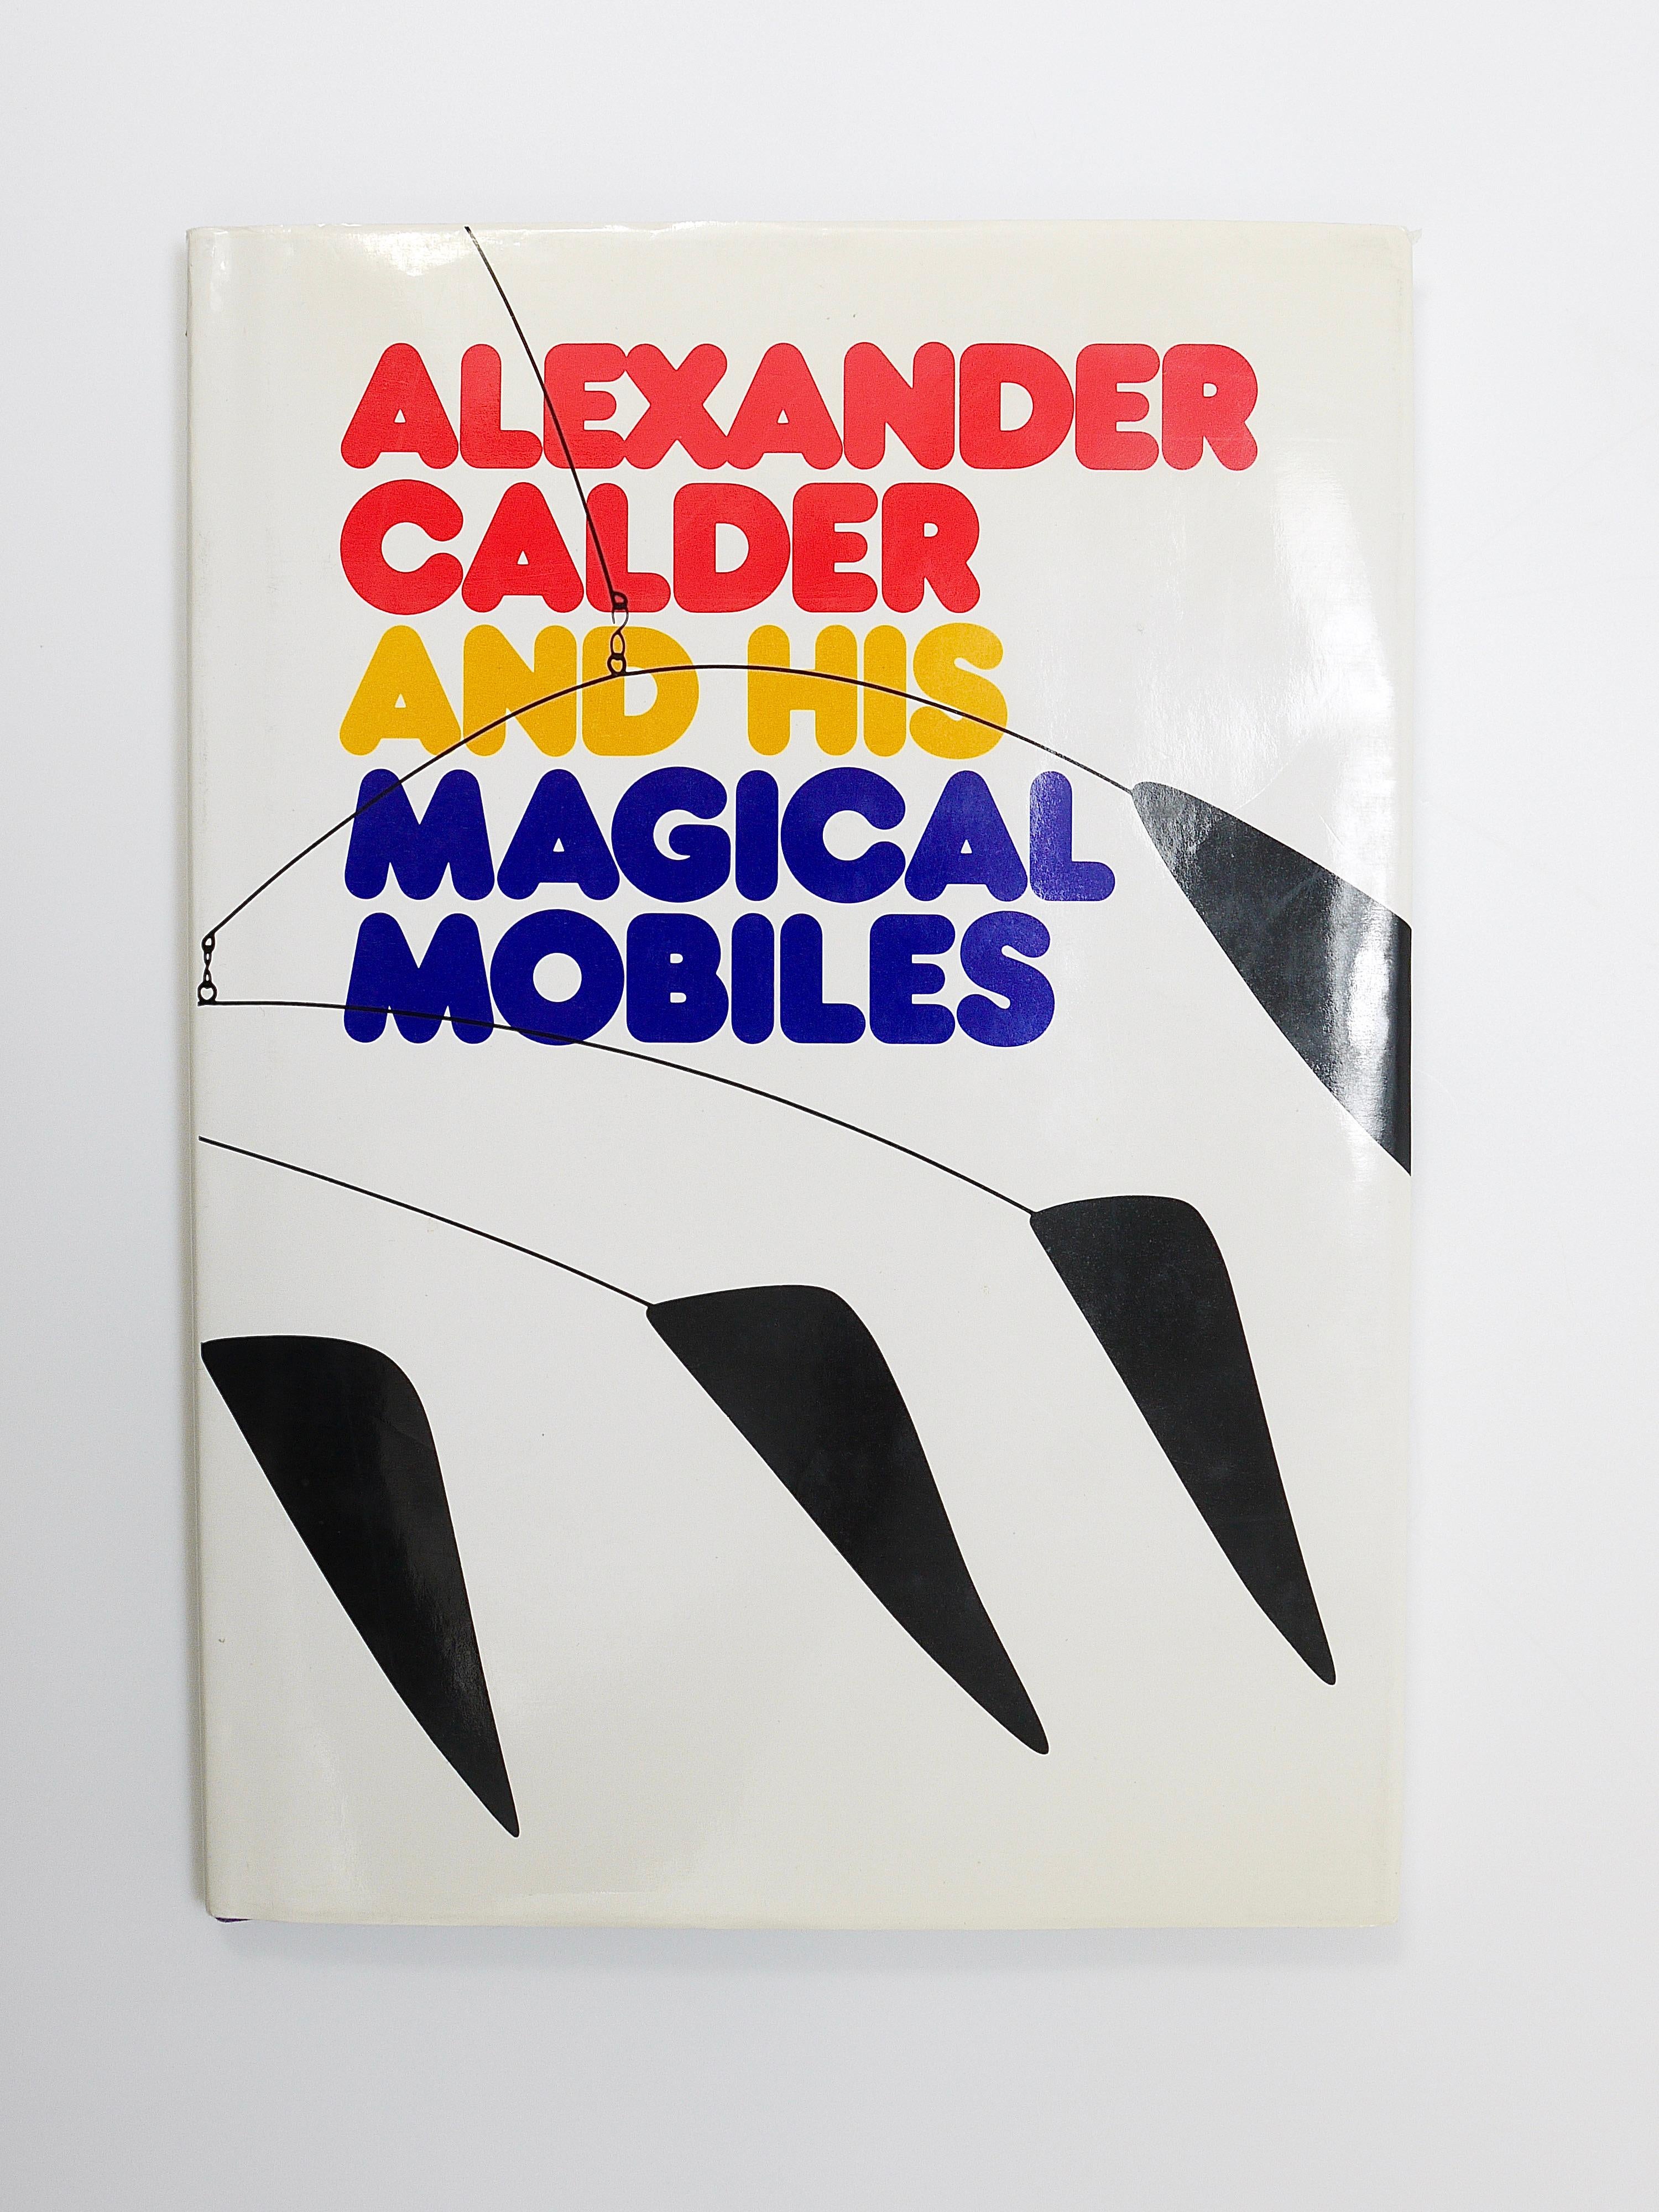 Ein großartiges Kunstbuch über den Bildhauer Alexander (Sandy) Calder von Gene Lipman, einem langjährigen Freund von Calder, und Margaret Aspinwall. 1. Auflage von 1981. 
7.5X10.25